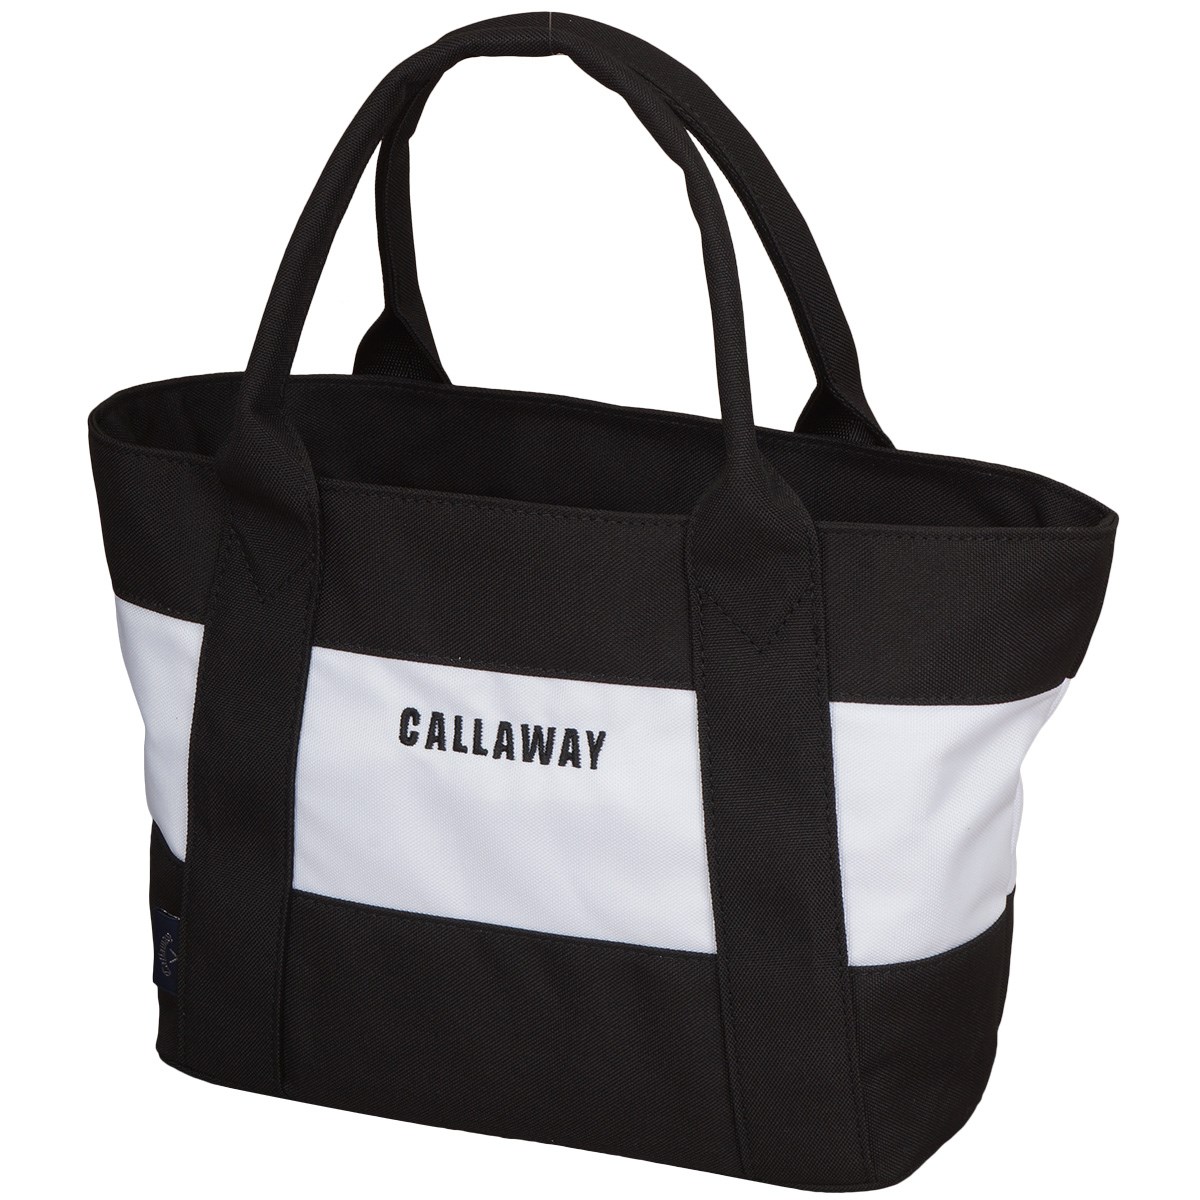 dショッピング |キャロウェイゴルフ Callaway Golf カートバッグ 